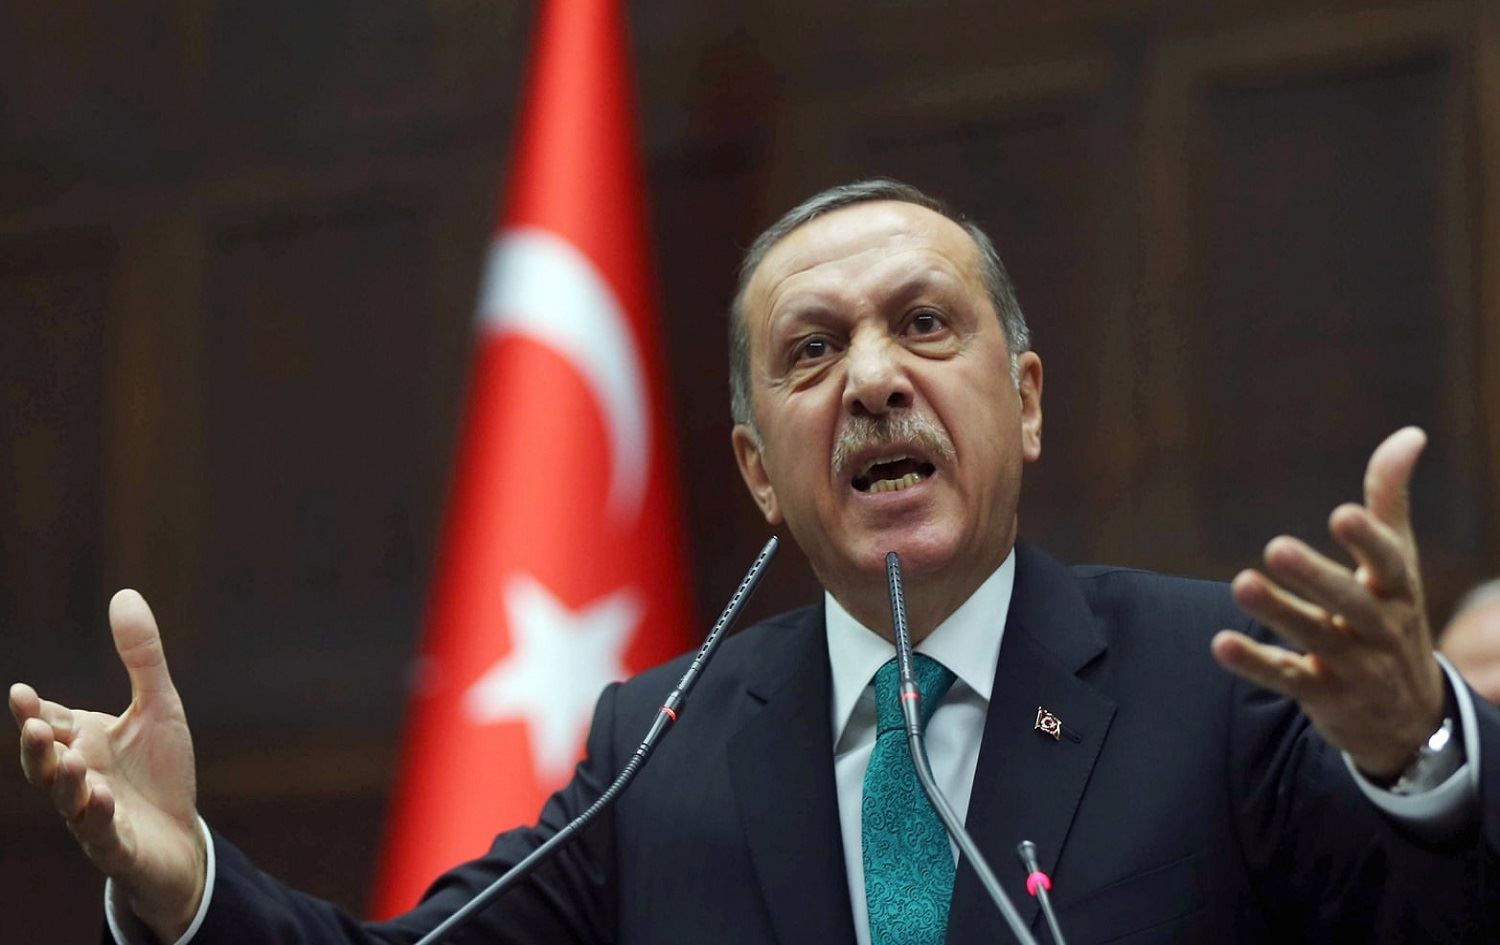 Νέες απειλές από την Τουρκία: «Μπορούμε και εμείς να συλλάβουμε τον Γενικό Πρόξενο της Ελλάδας στην Σμύρνη»